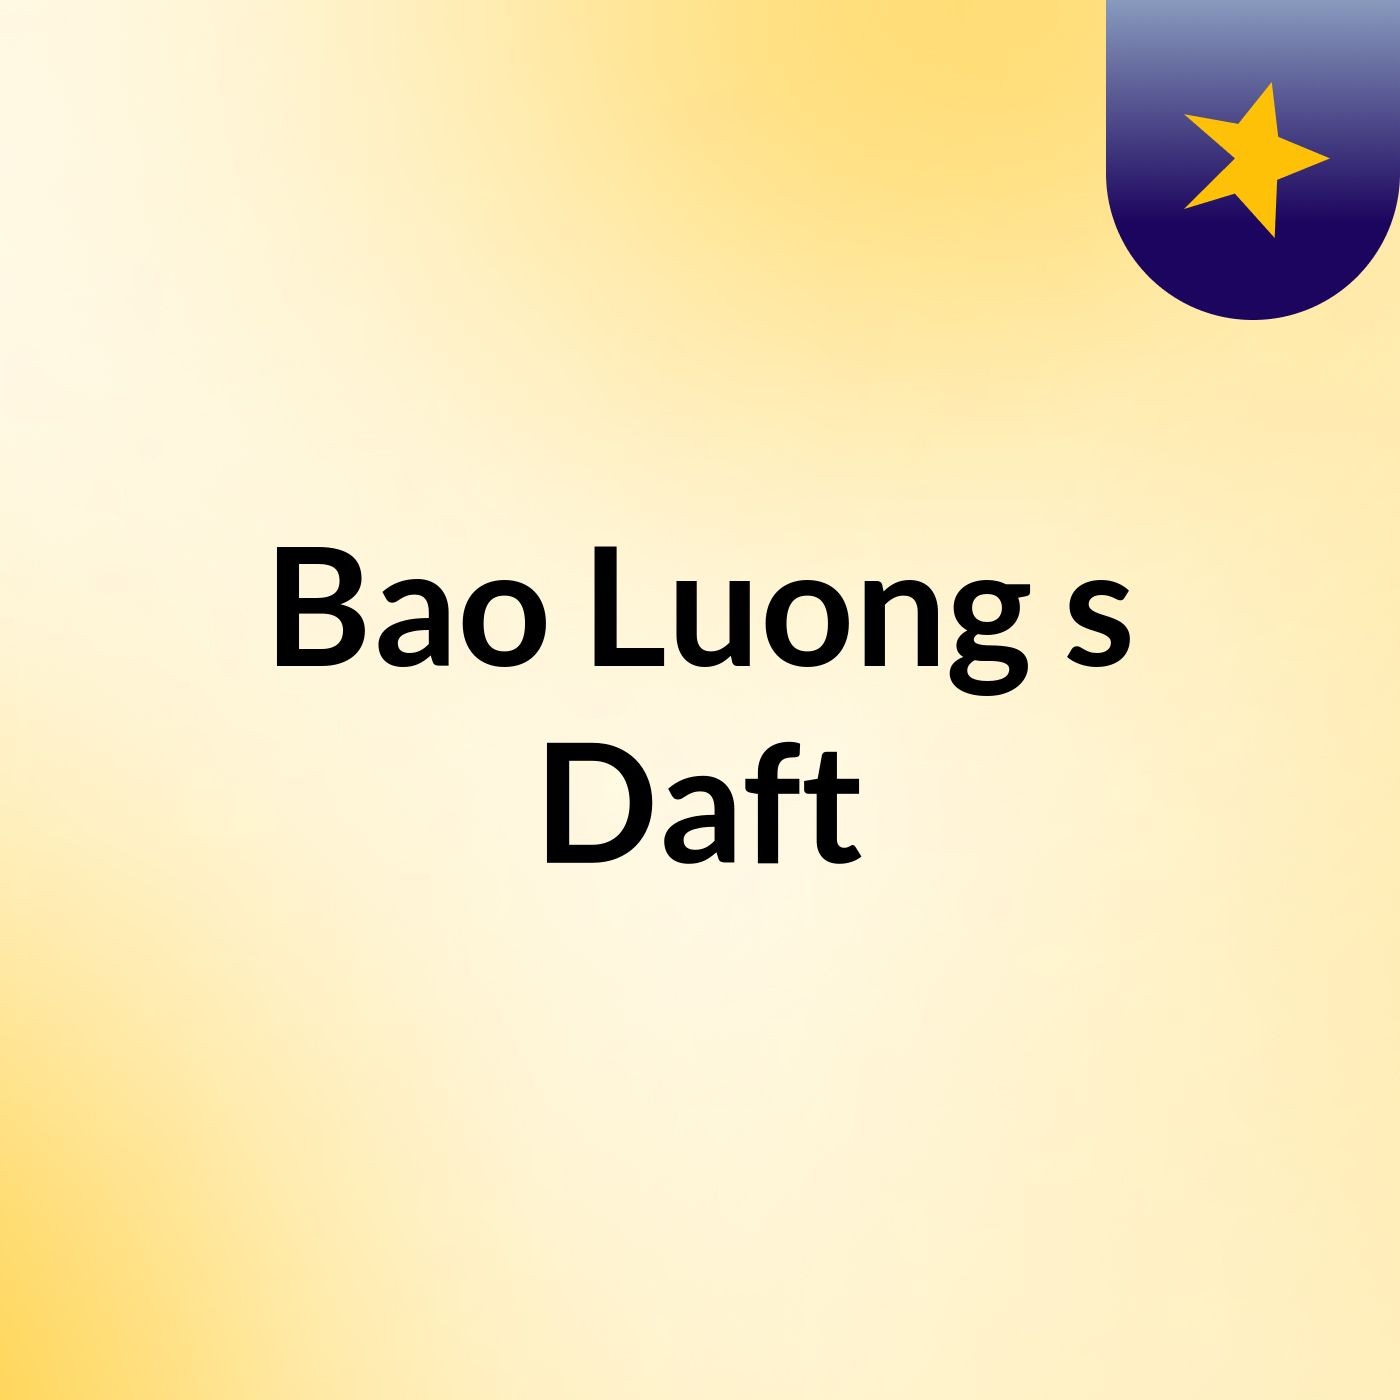 Bao’s draft of podcast